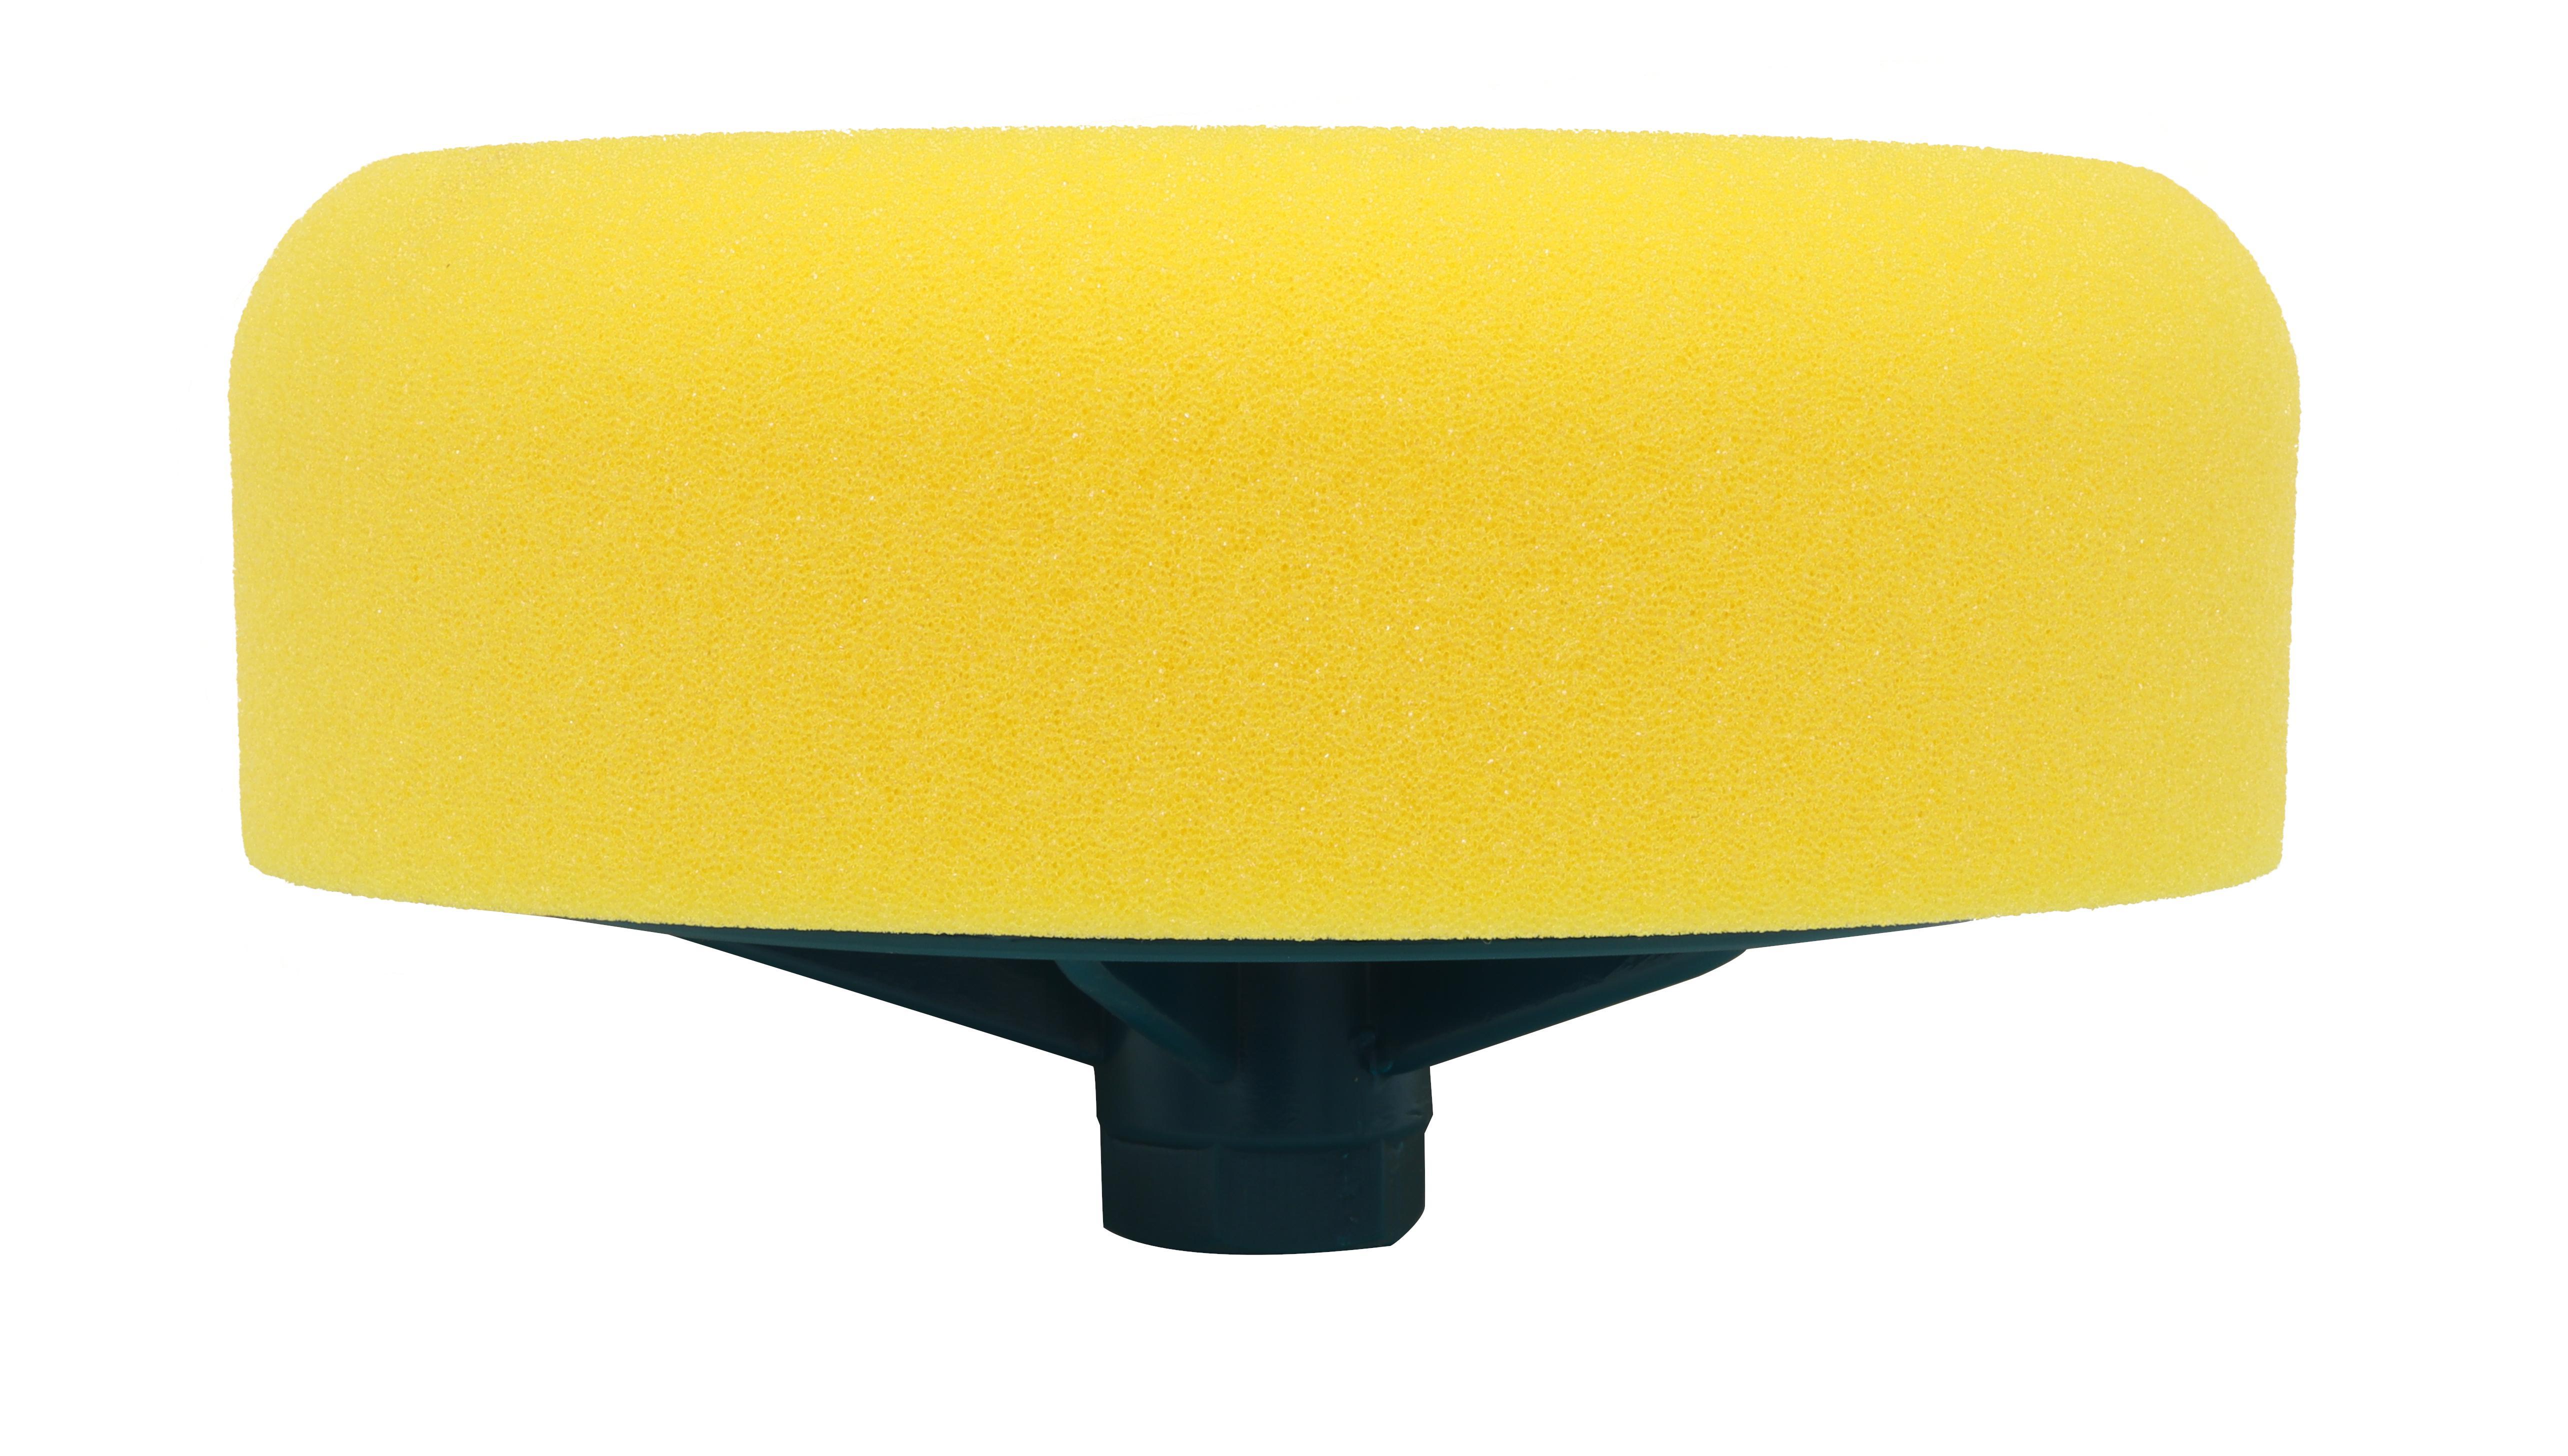 Polierschwamm 150 mm x 50 mm (gelb) M14 | polieren Schwamm weich